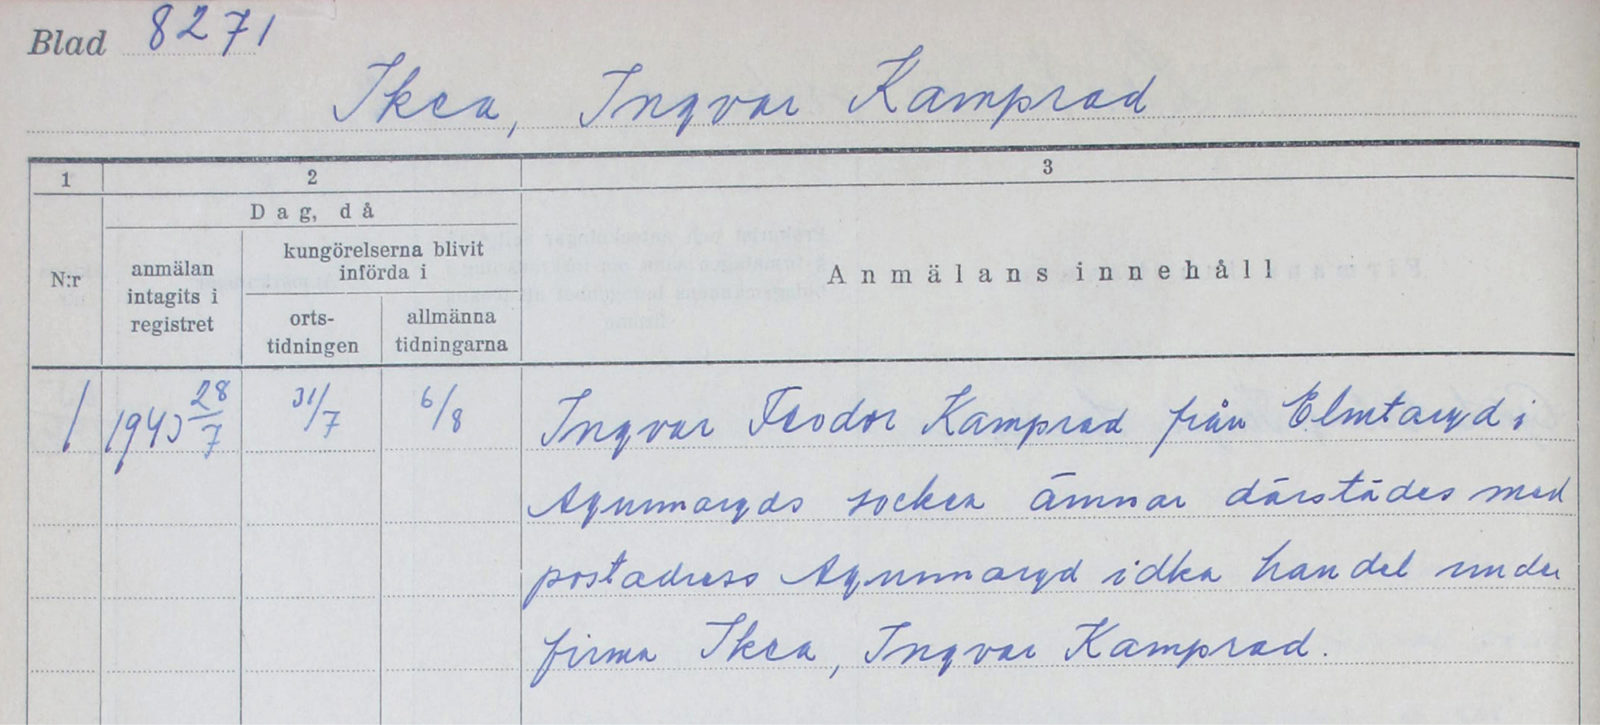 Blankett ifylld med blå penna, Ingvar Kamprad begär att få starta firman Ikéa i Elmtaryd, Agunnaryd, 1940.